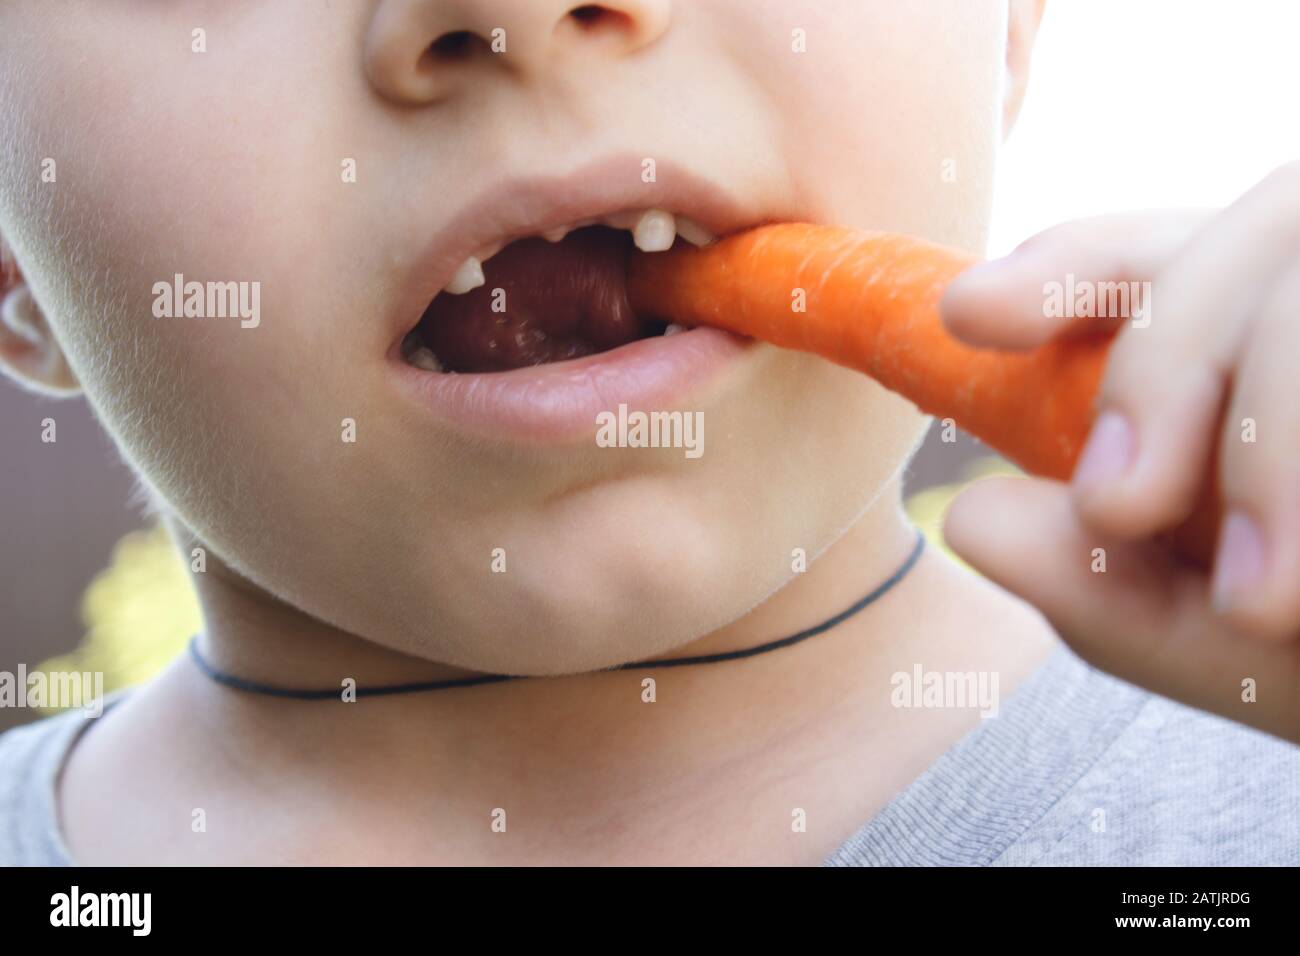 Ein kleiner Junge ohne Zähne isst in der Natur eine orangefarbene Karotte. Nahaufnahme. Stockfoto